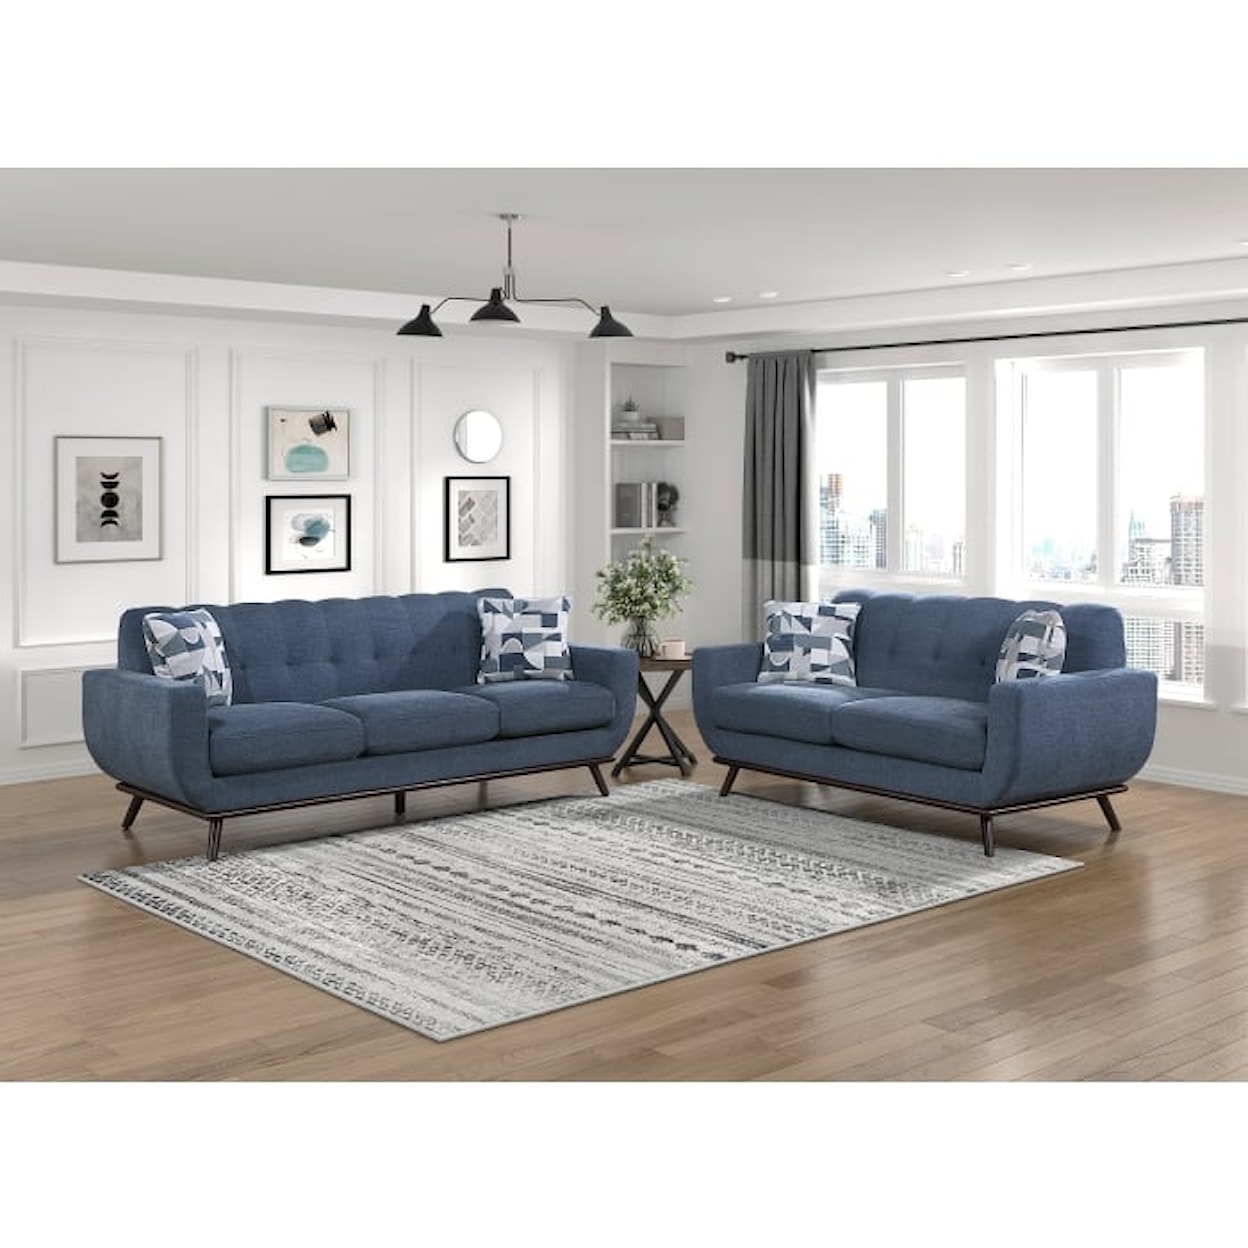 Homelegance Furniture Ever Sofa